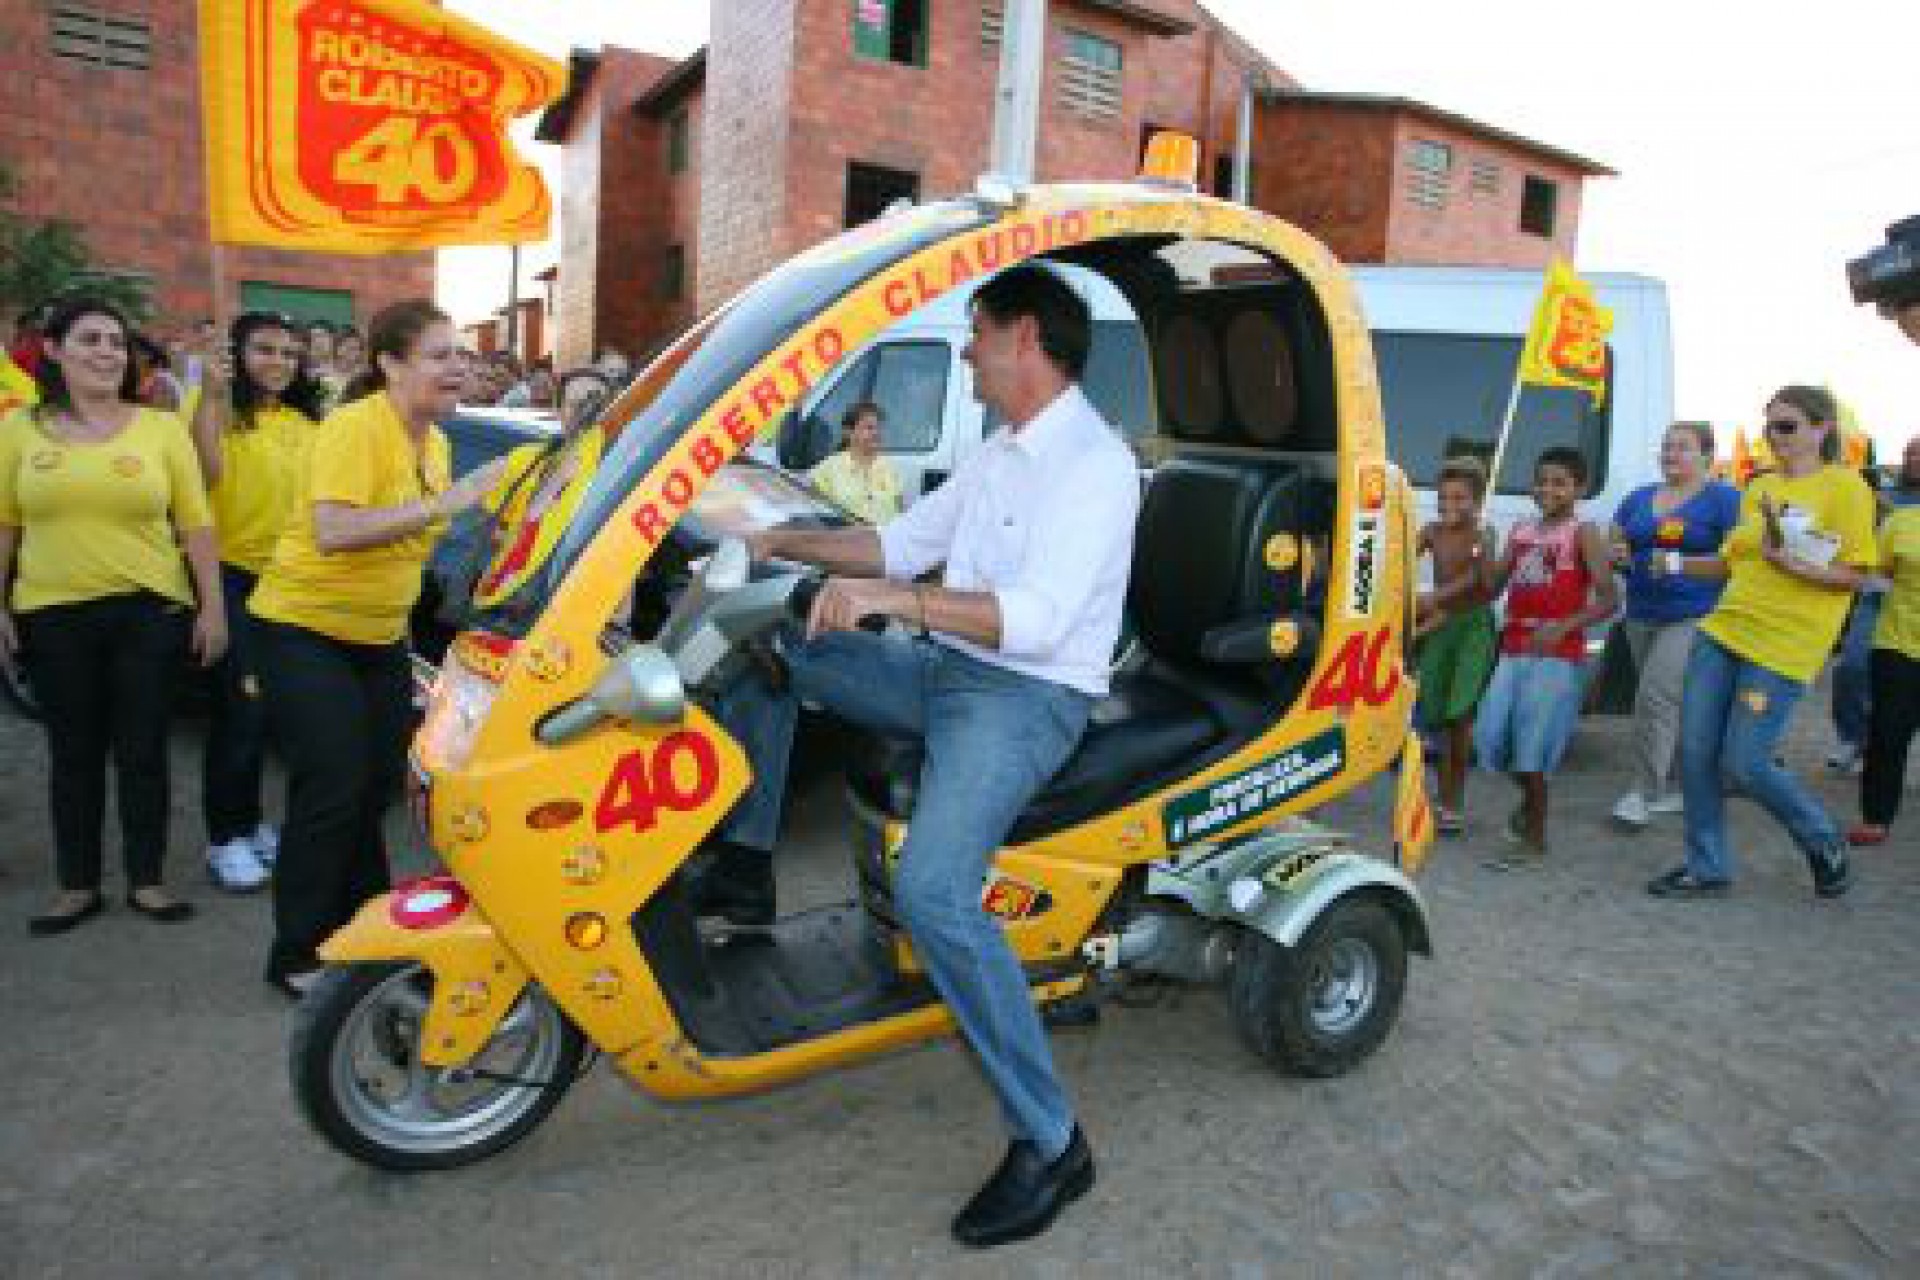 Campanha deverá reeditar cenas como Cid Gomes em motoneta para eleger seu candidato (Foto: divulgação)